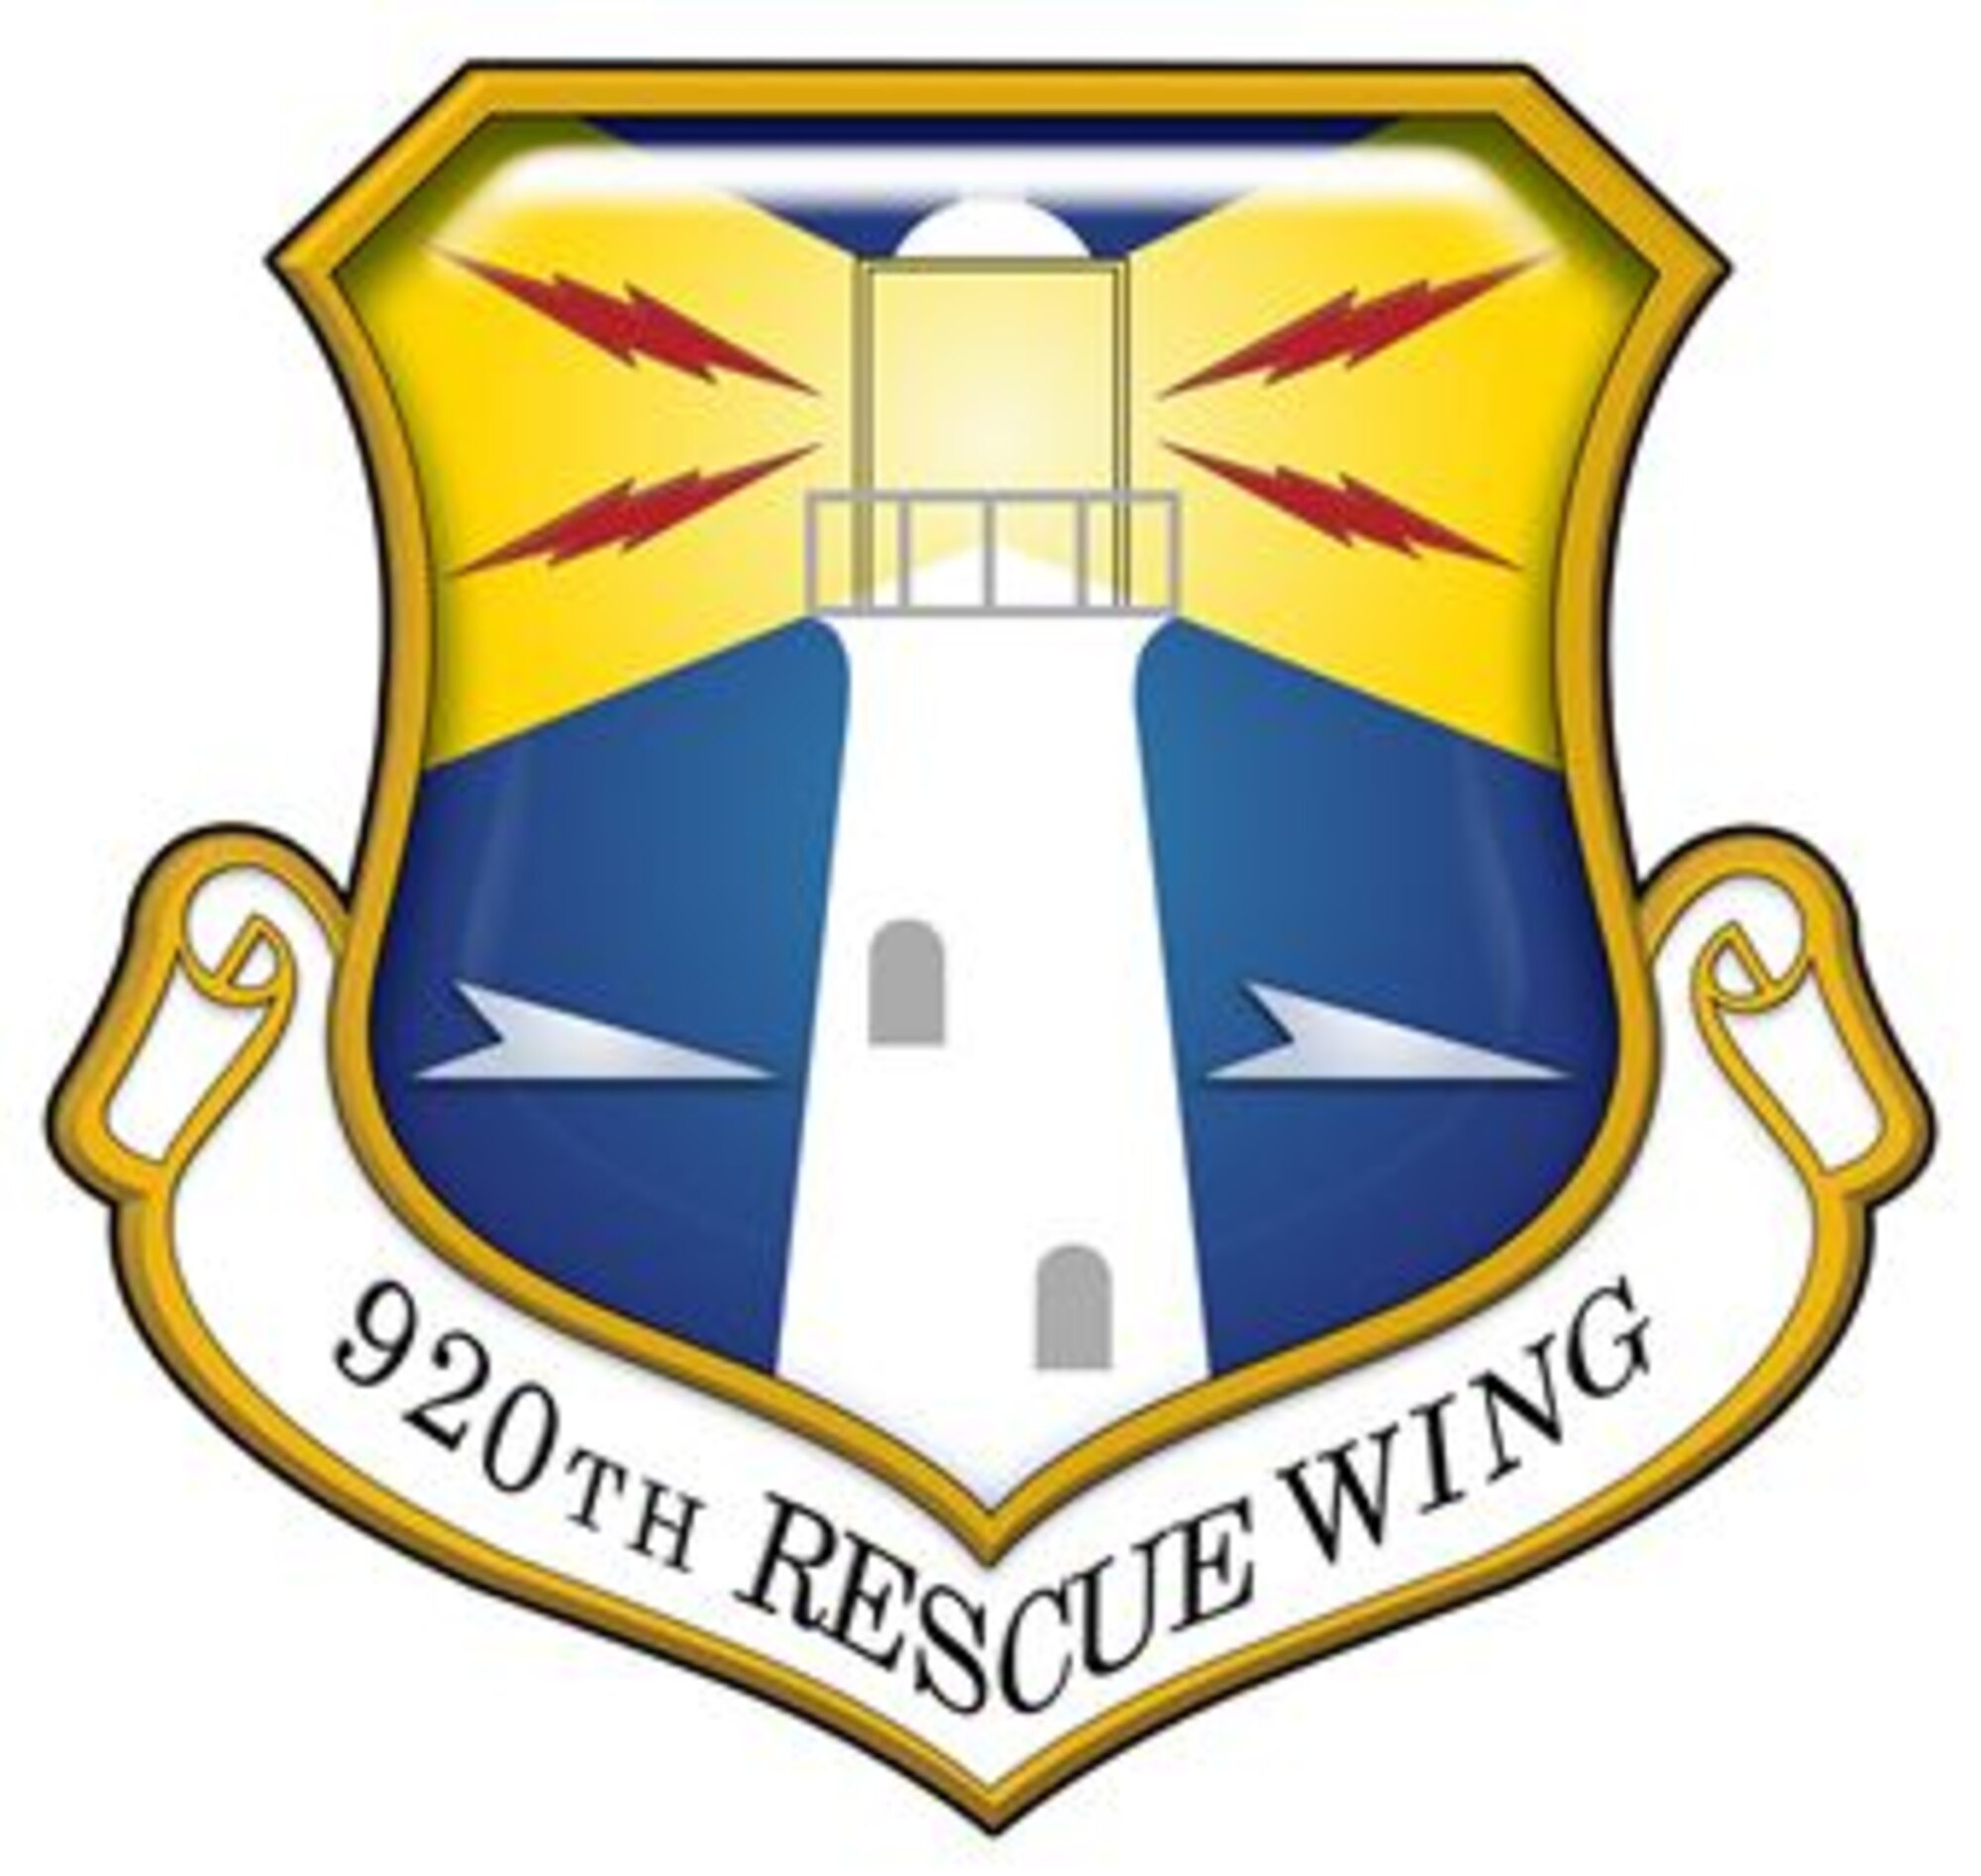 920th Rescue Wing Unit Shield